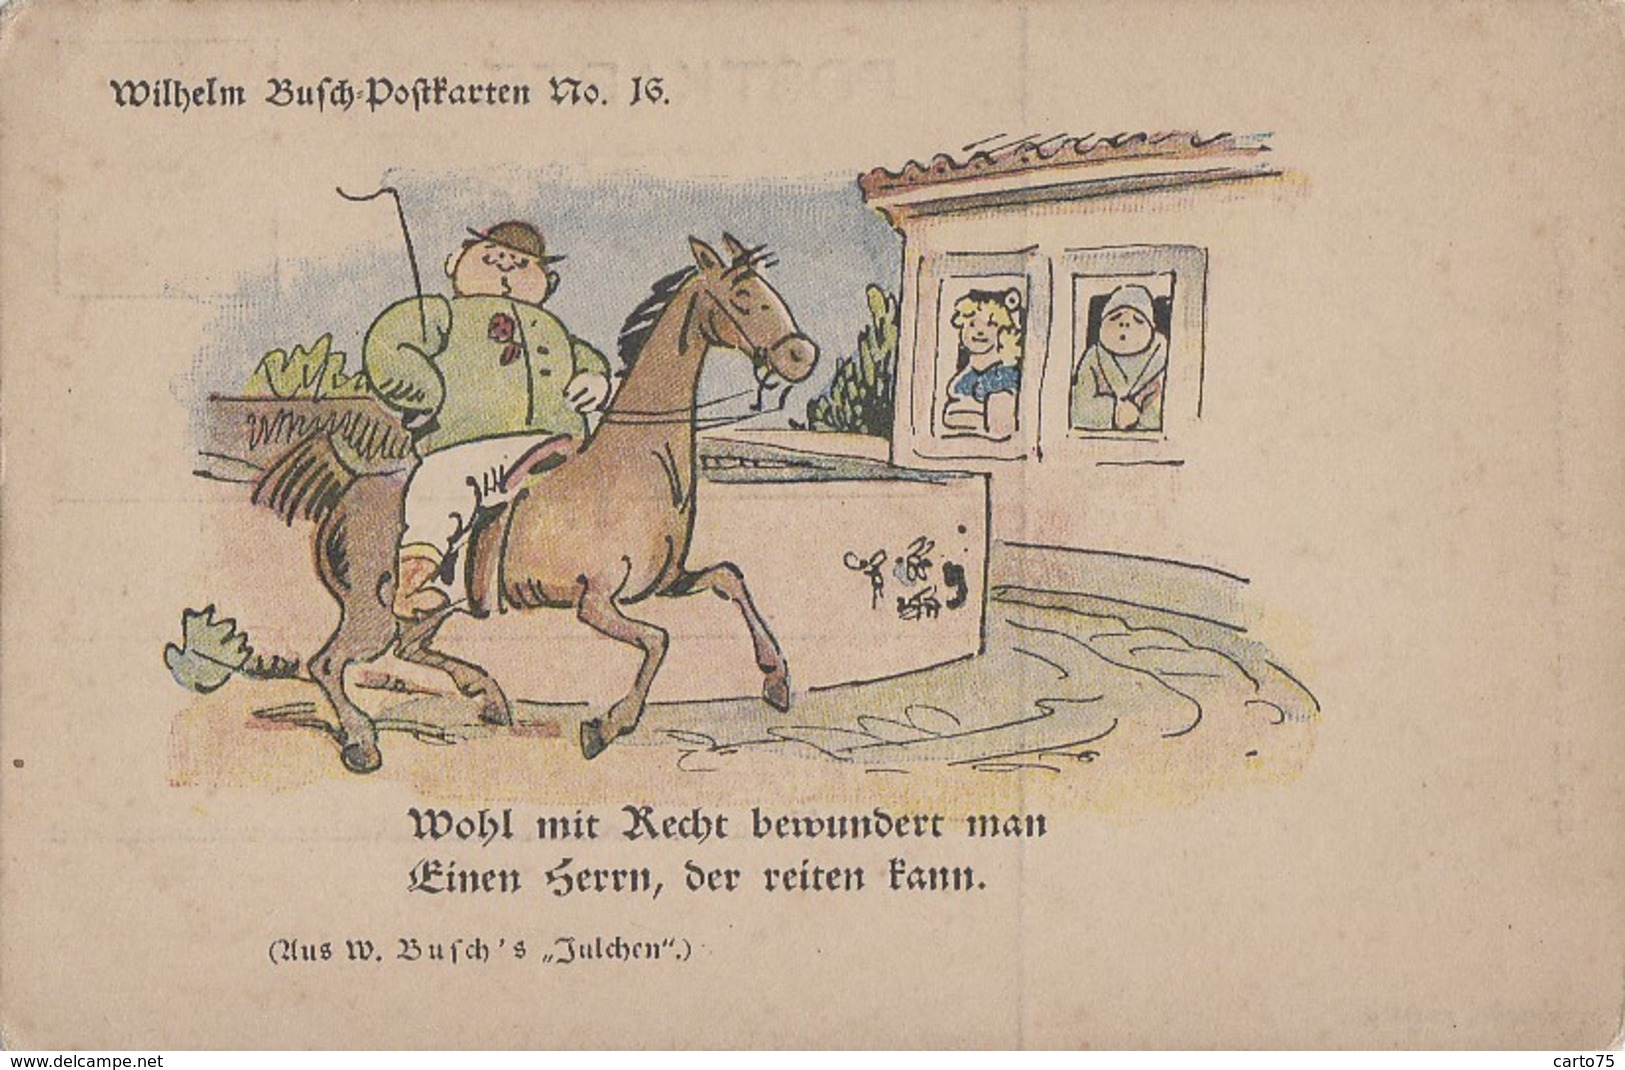 Illustrateurs - Wilhelm Busch Postkarten N° 16 - Wohl Mit Recht Bewundert Man Einen Herrn, Der Reiten Kann - Cheval - Busch, Wilhelm